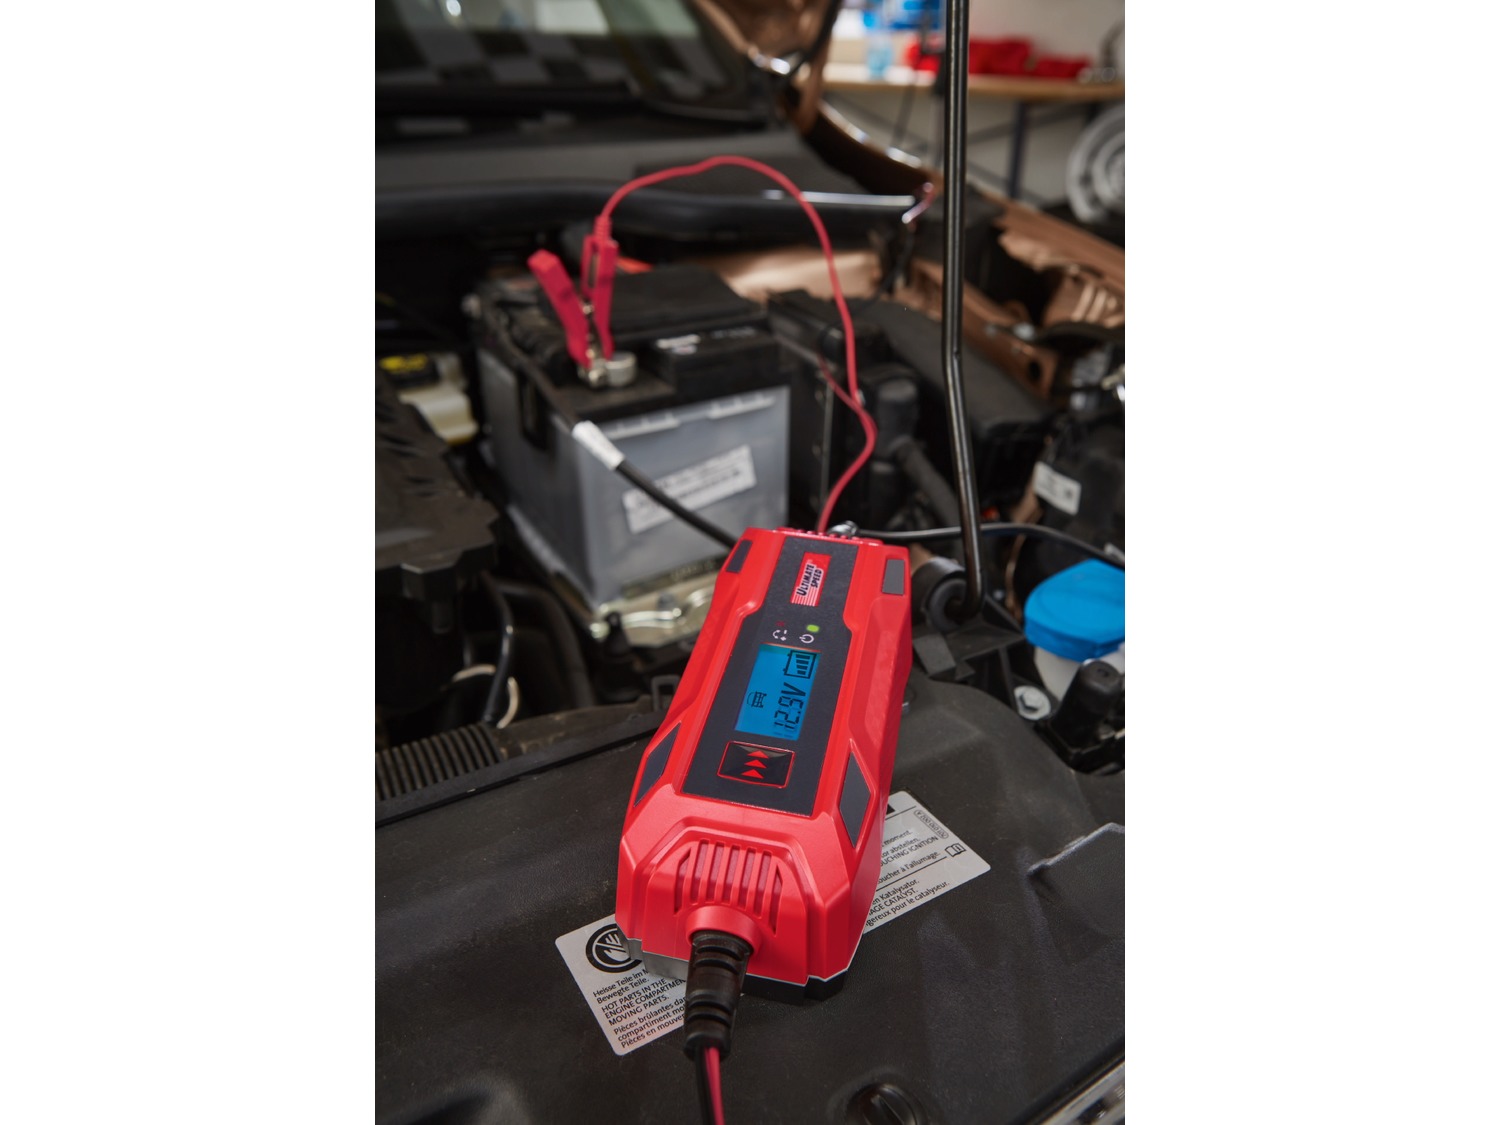 ULTIMATE SPEED Chargeur de batterie pour véhicules motorisés ULGD 5.0 C1 -  Babi Black Market